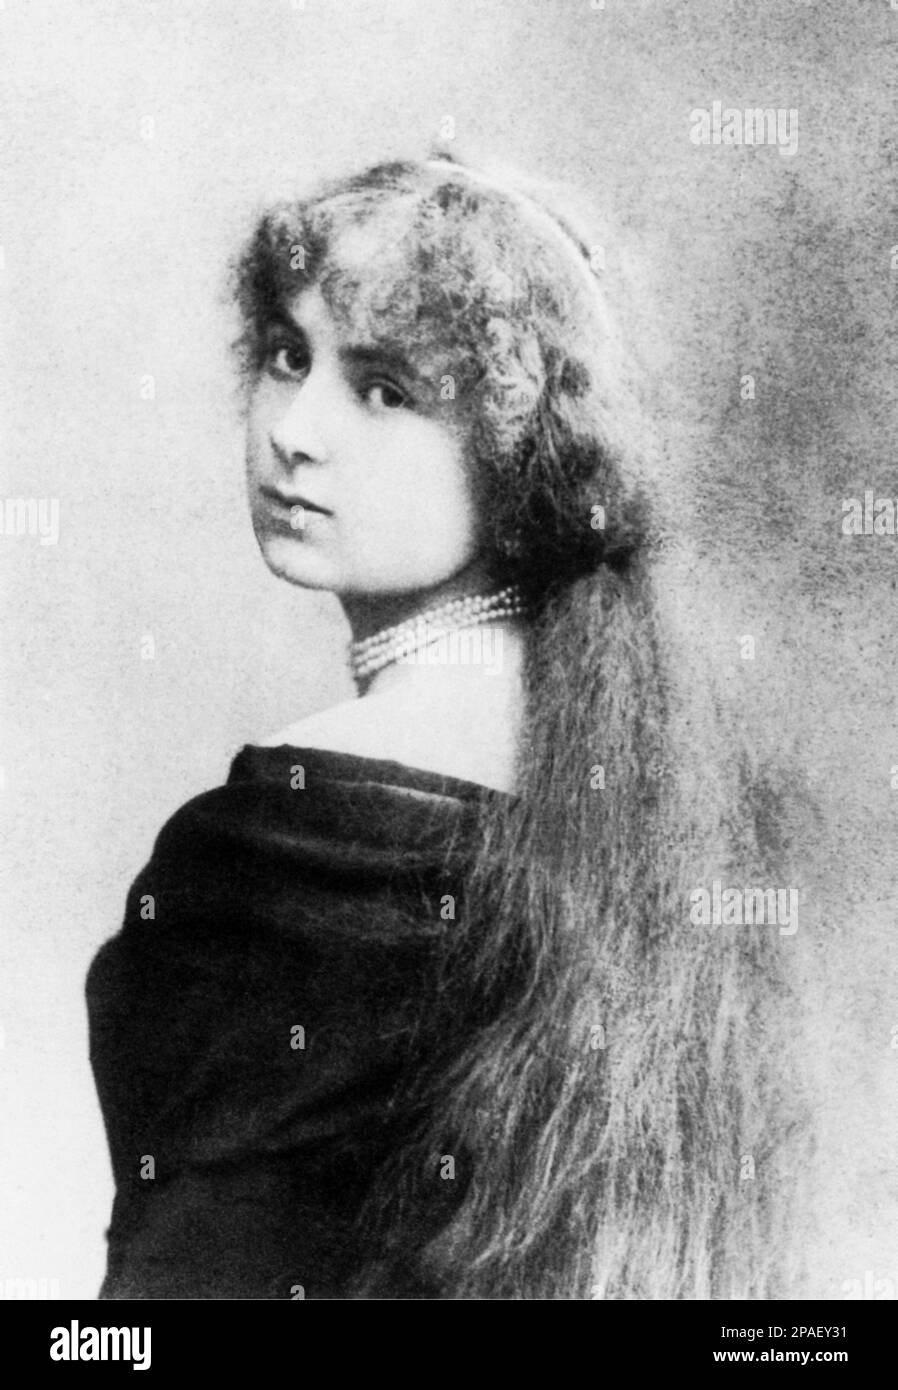 1879 : la princesse MARIA HARDOUIN DEL GALLESE , mariée en 1883 avec le poète italien, homme politique et écrivain GABRIELE d'ANNUNZIO (Pescara 1863 - Gardone Riviera 1938 ) - Collier de perles - Collana di perle - perla - bijoux - bijoux - bijoux pizzo - dentelle - portrait - ritratto - Dannunzio - DI GALLESE - principessa - nobili - noblesse - Nobiltà italiana - BELLE EPOQUE --- ARCHIVIO GBB Banque D'Images